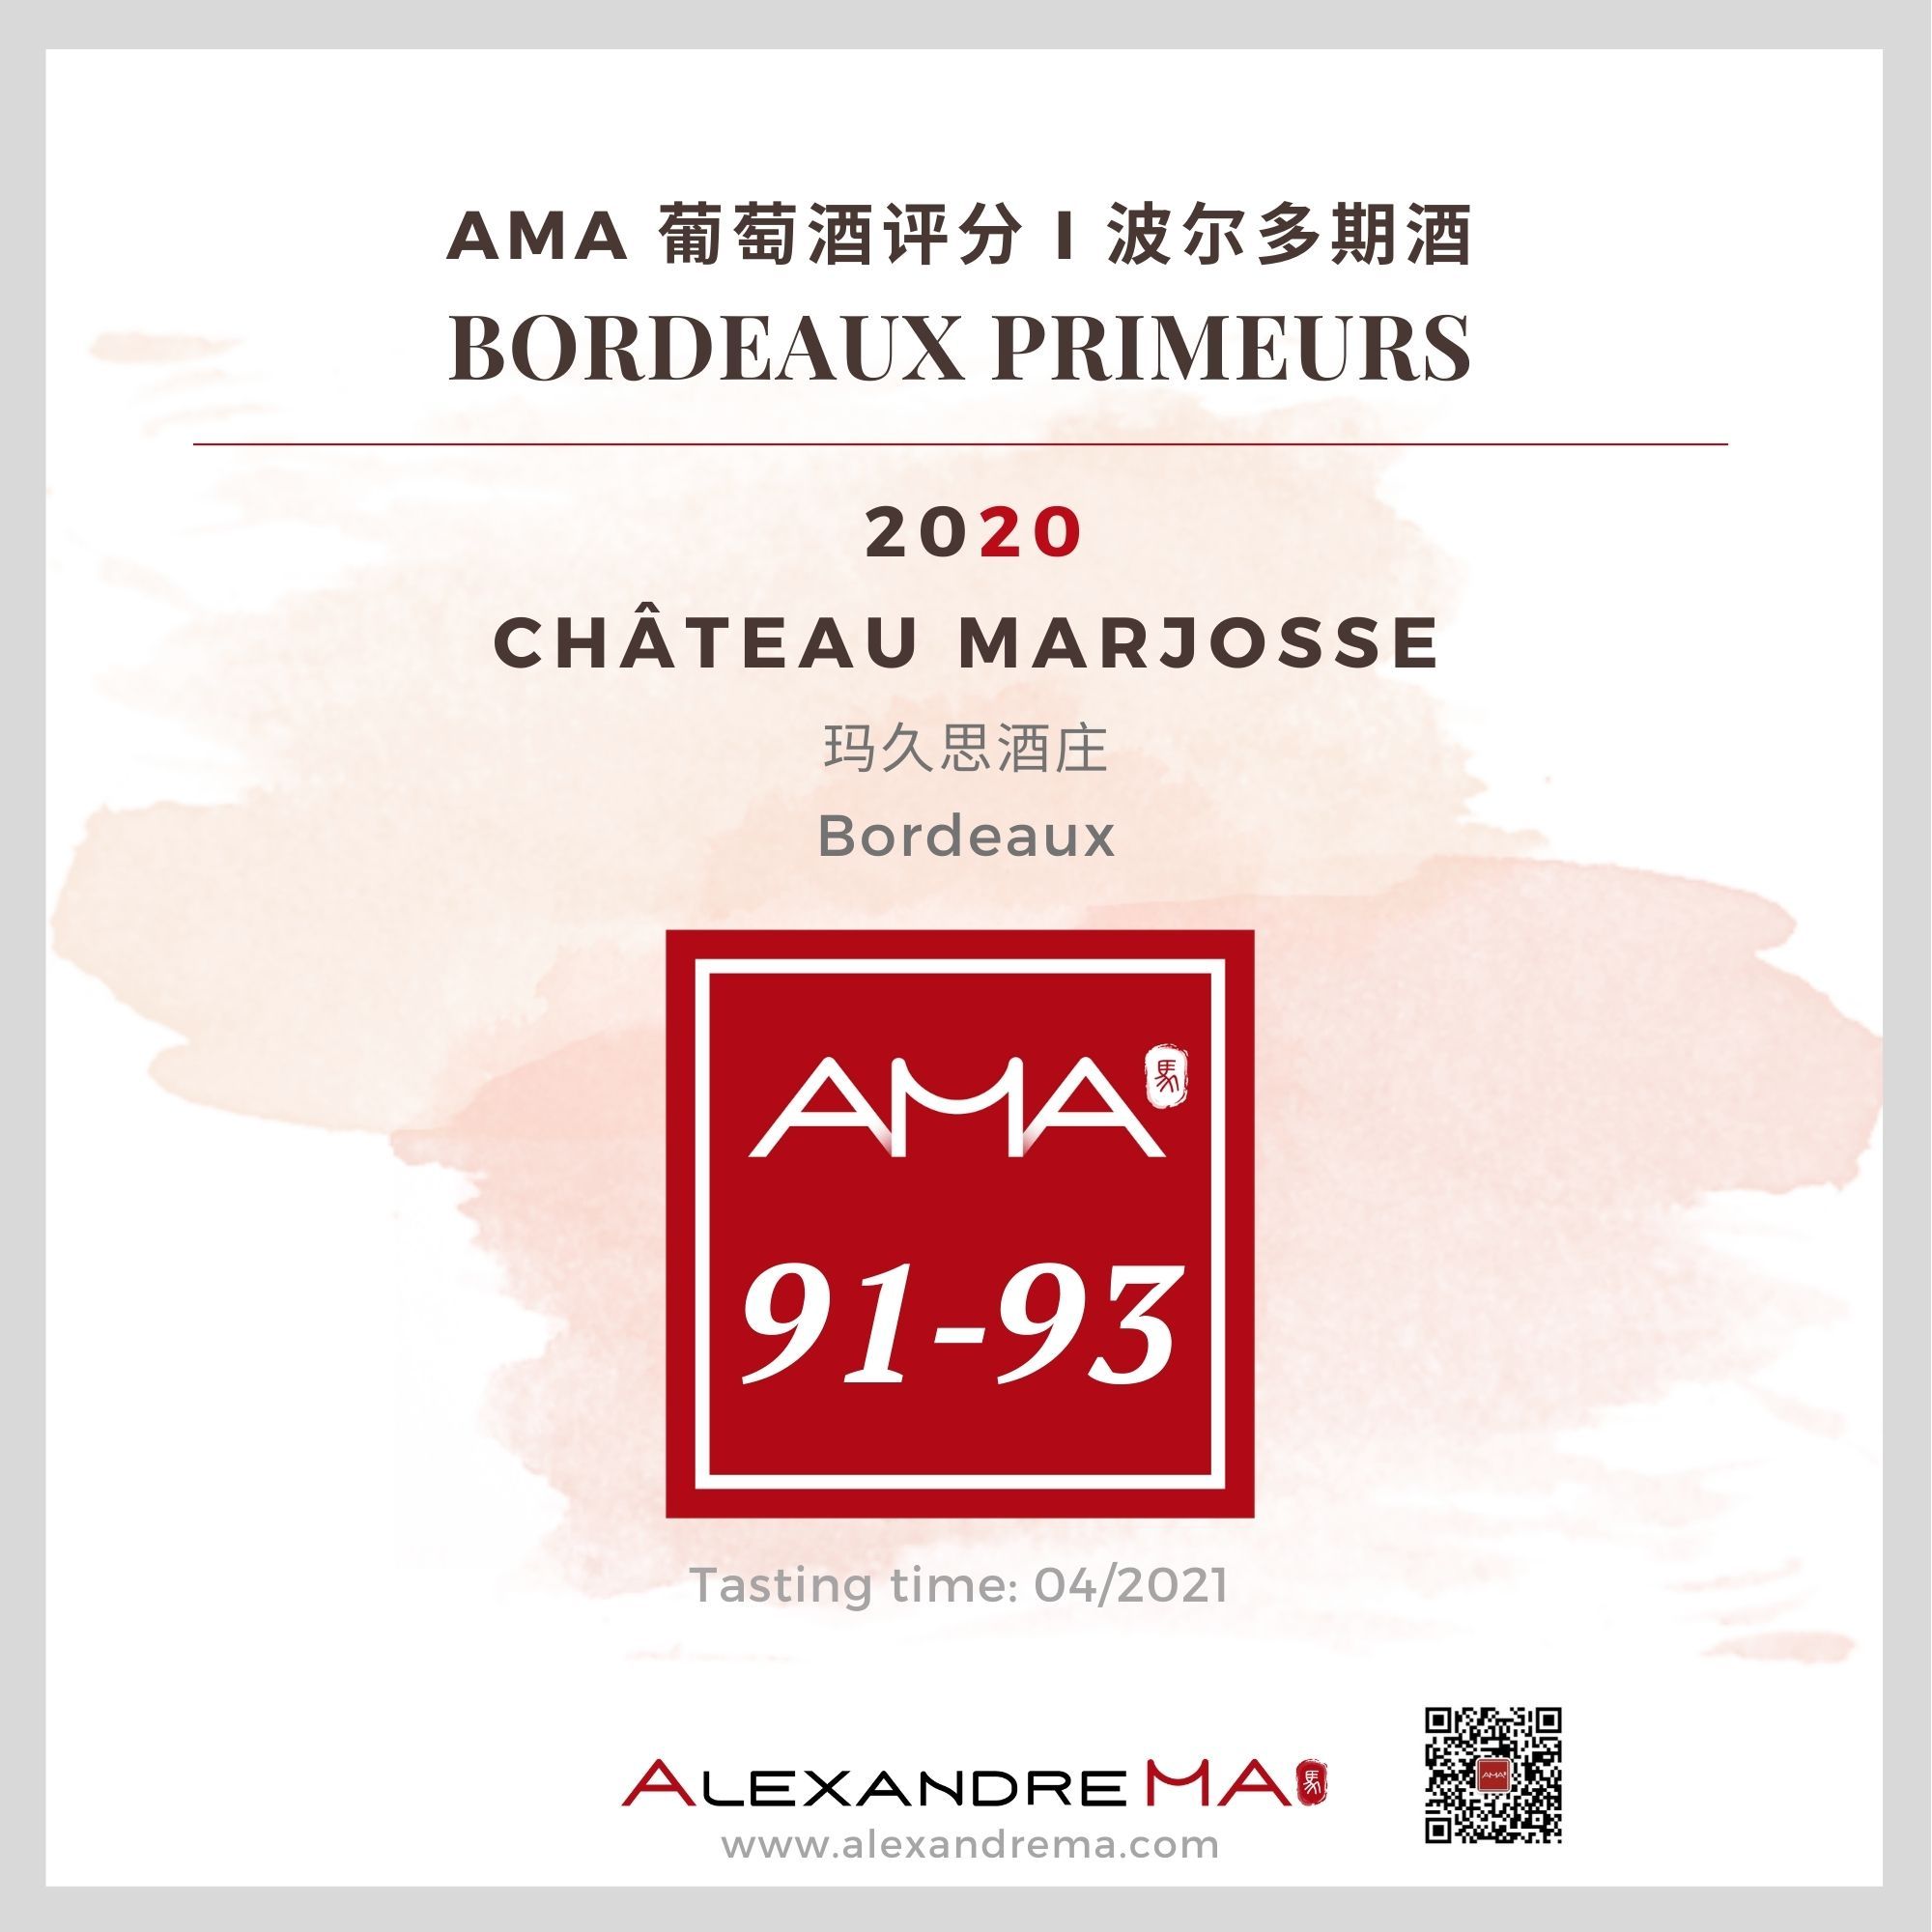 Château Marjosse 2020 玛久思酒庄 - Alexandre Ma